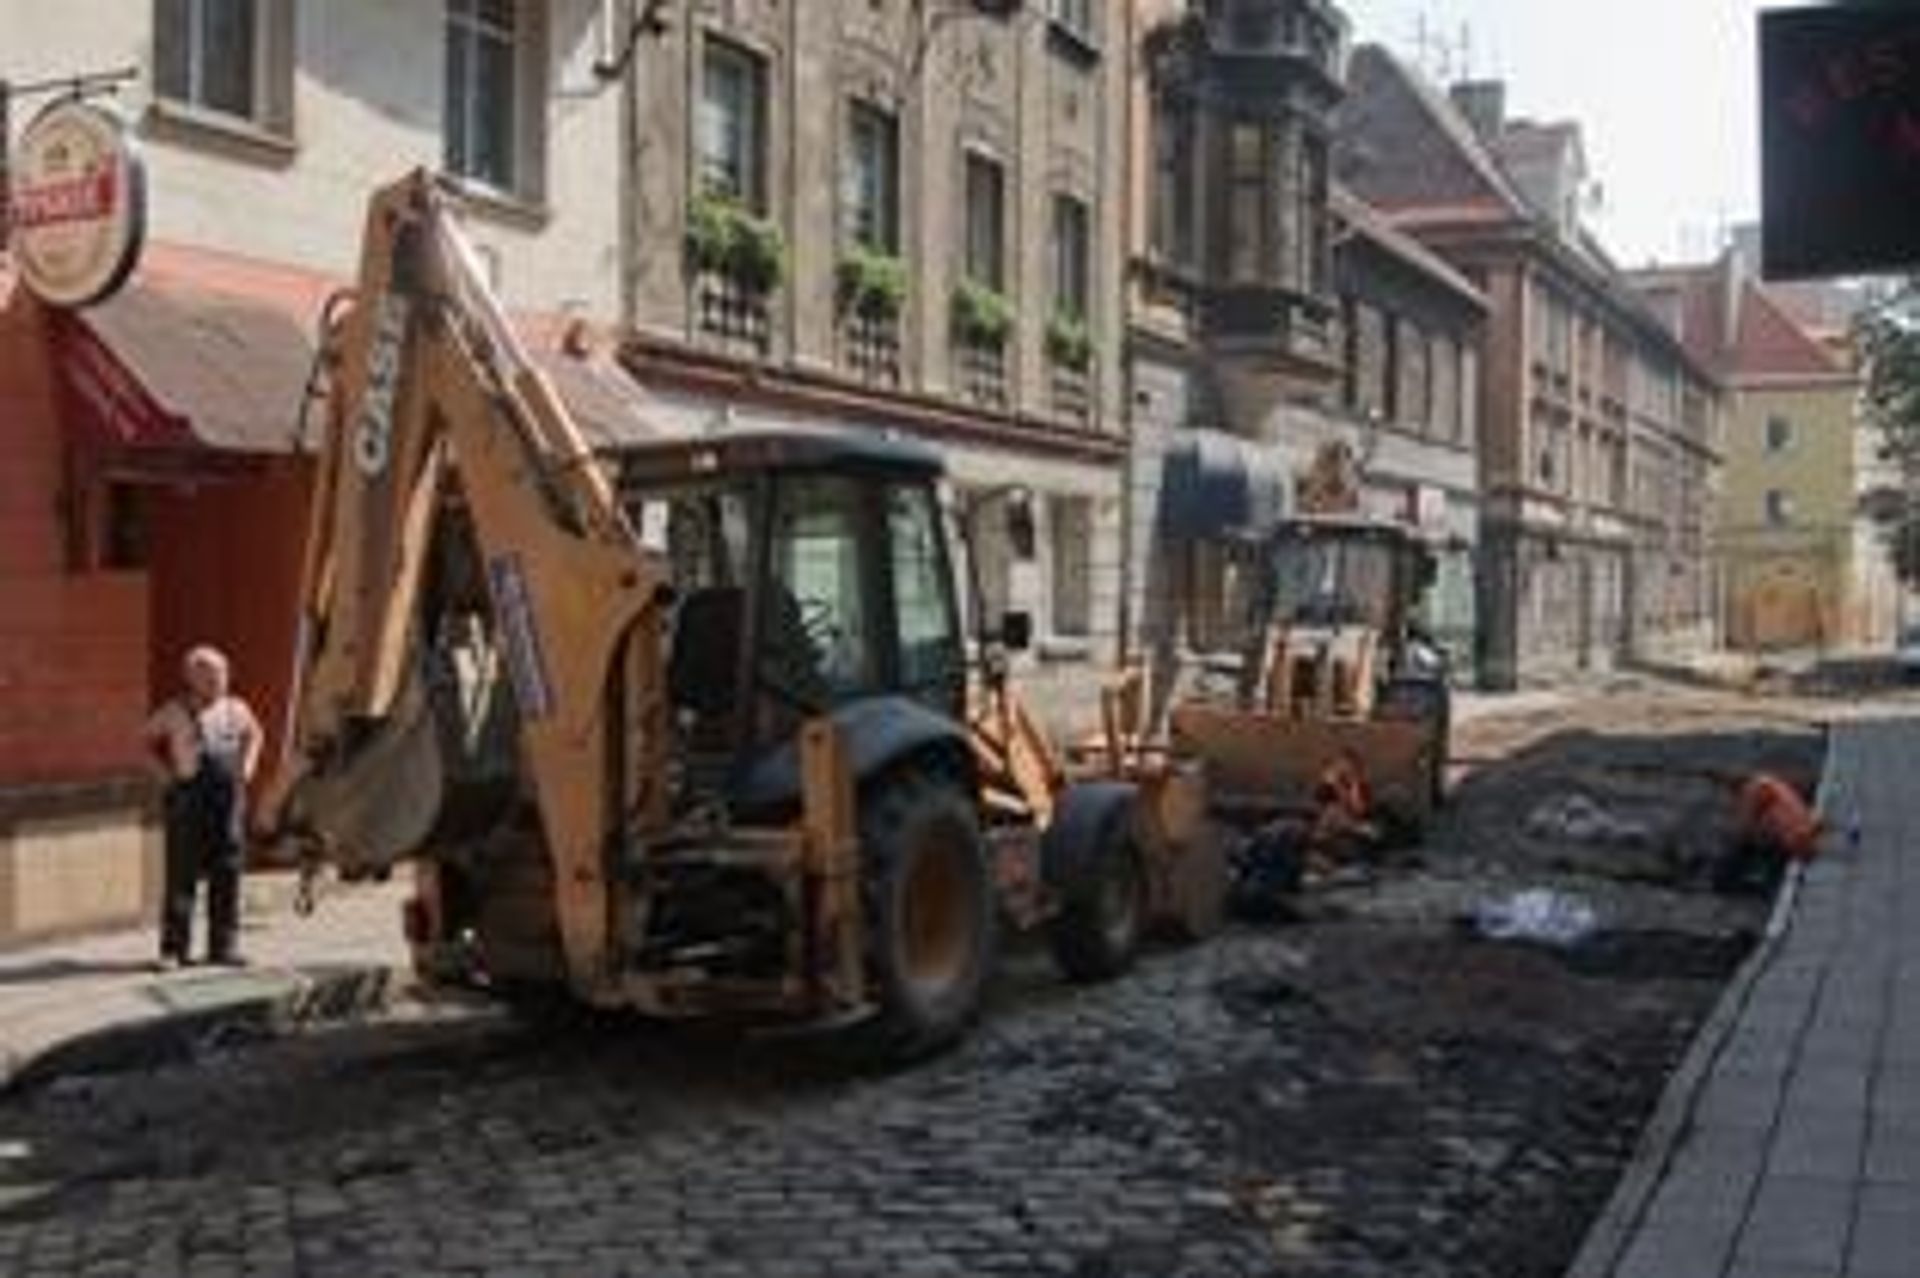  Gliwice: rusza drugi etap przebudowy starówki